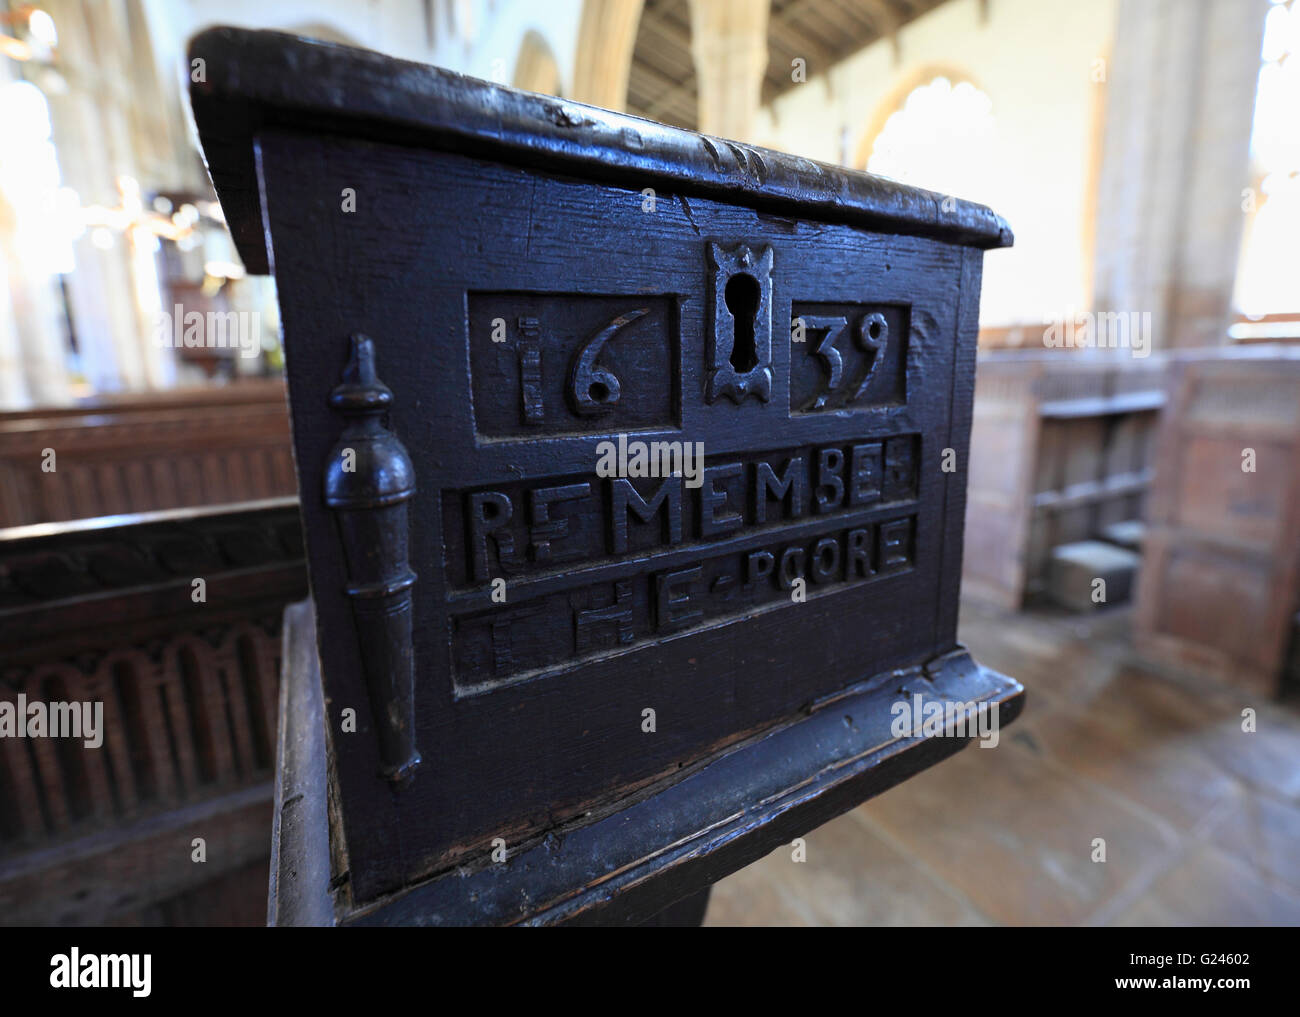 Sammelbox mit "1639 erinnern die POORE' in der Kirche St. Peter Walpole, Norfolk geschnitzt. Stockfoto